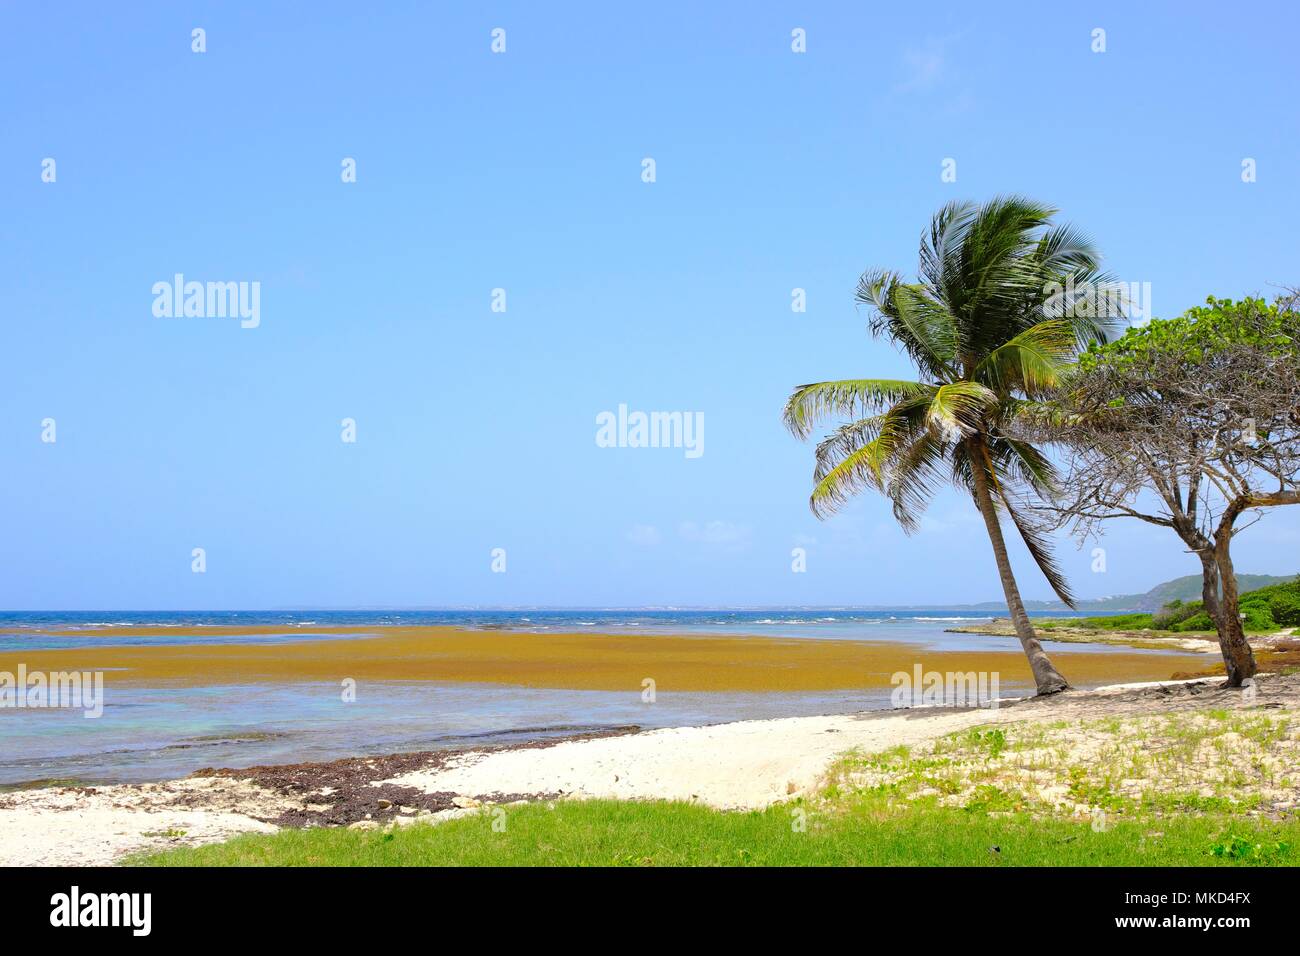 Varada de sargassum (Sargassum fluitans) y Sargassum natans) en la playa de Anse Maurice, Petit Canal común, la playa está cerrada, en ausencia de viento, un olor pestilential impide su asistencia, Guadalupe Foto de stock